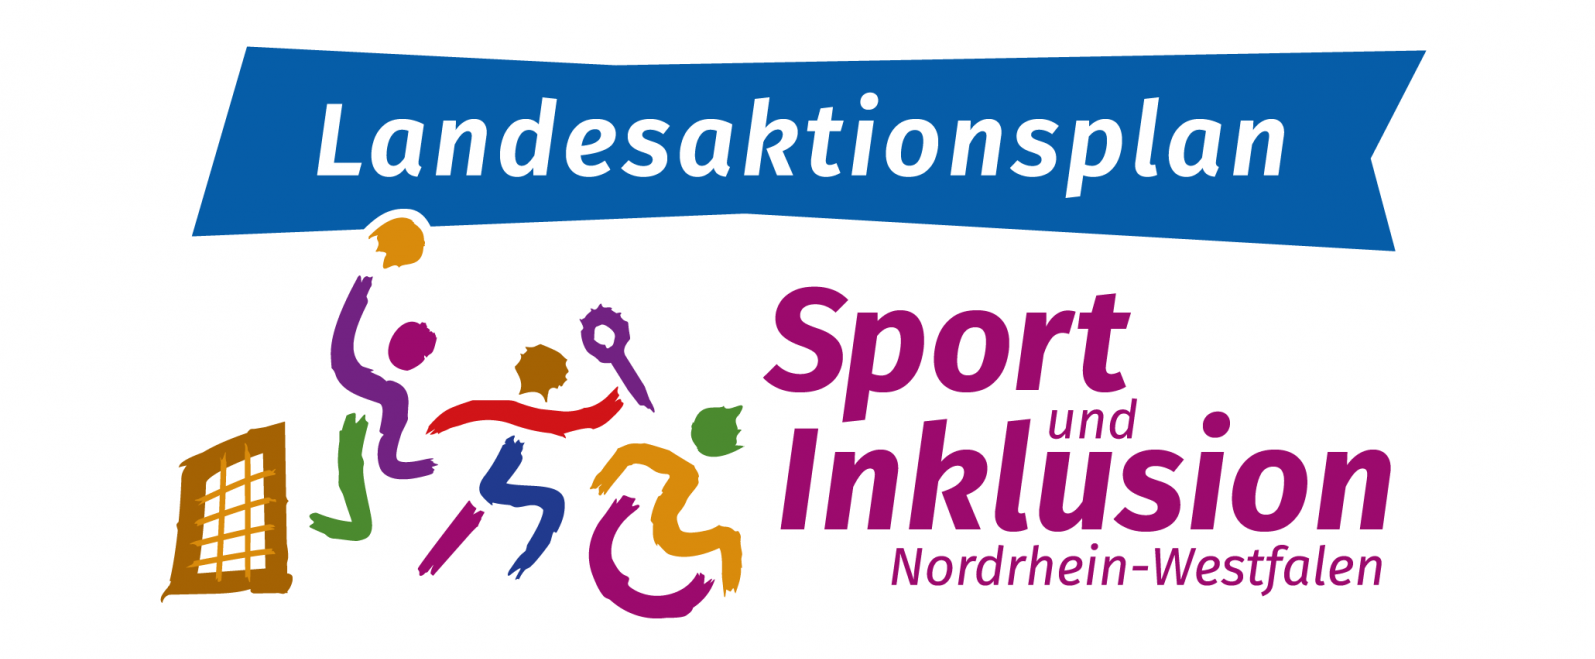 Landesaktionsplan Sport und Inklusionen in Nordrhein-Westfalen Logo